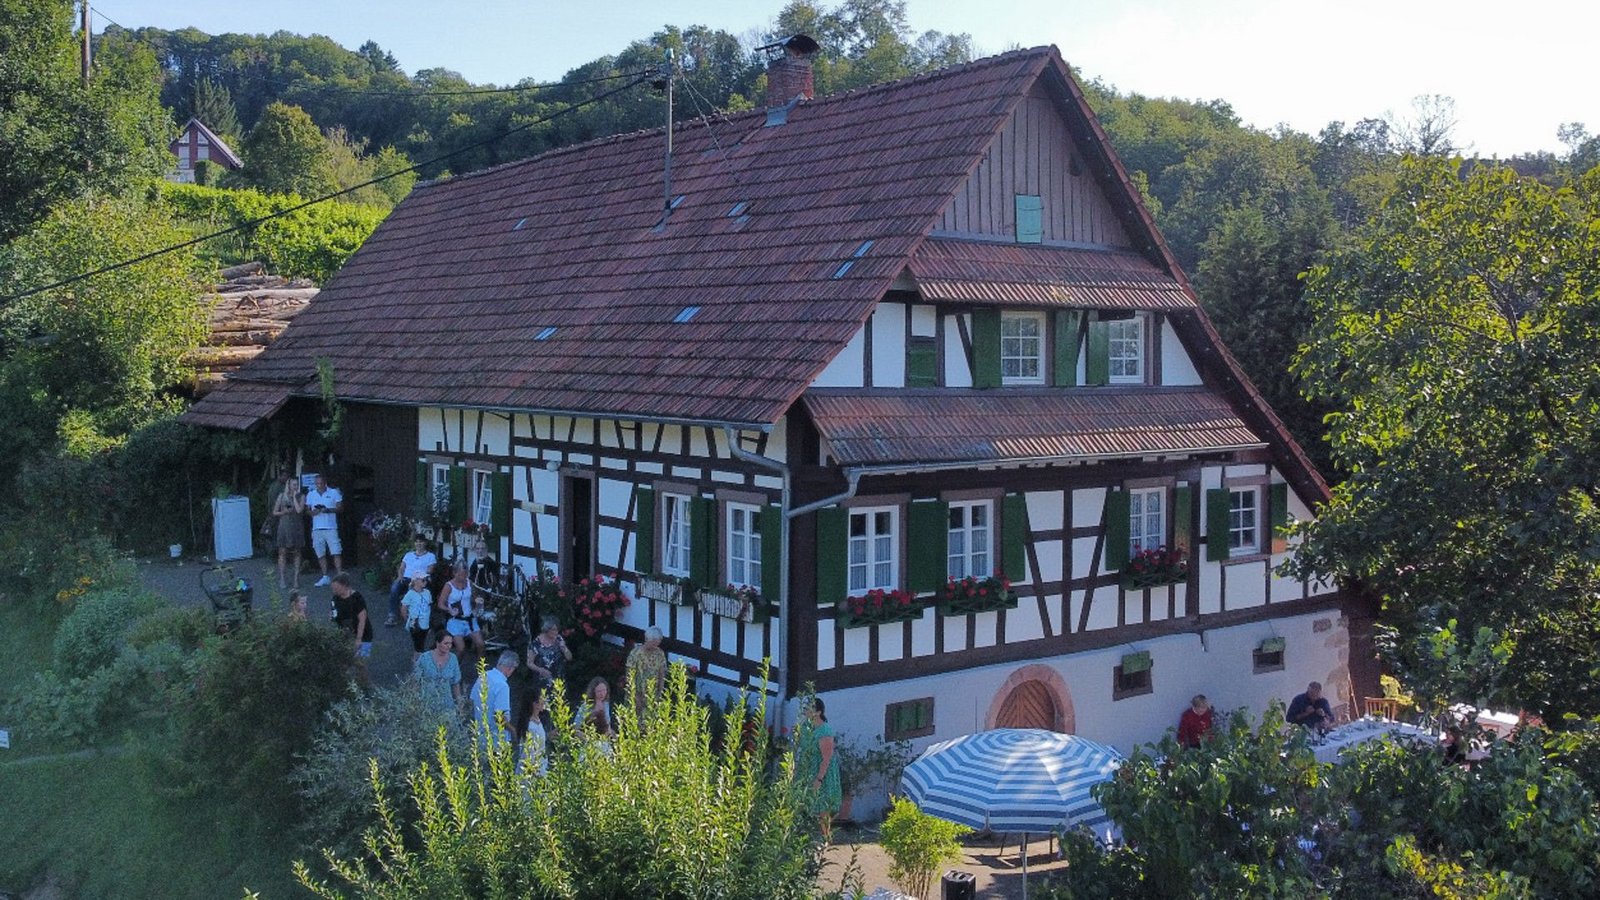 Ausflugsziel: das liebevoll erhaltene Bauernhaus „Doll Augustinus Hus“ in Sasbachwalden.Foto: Doll Augustinus Hus